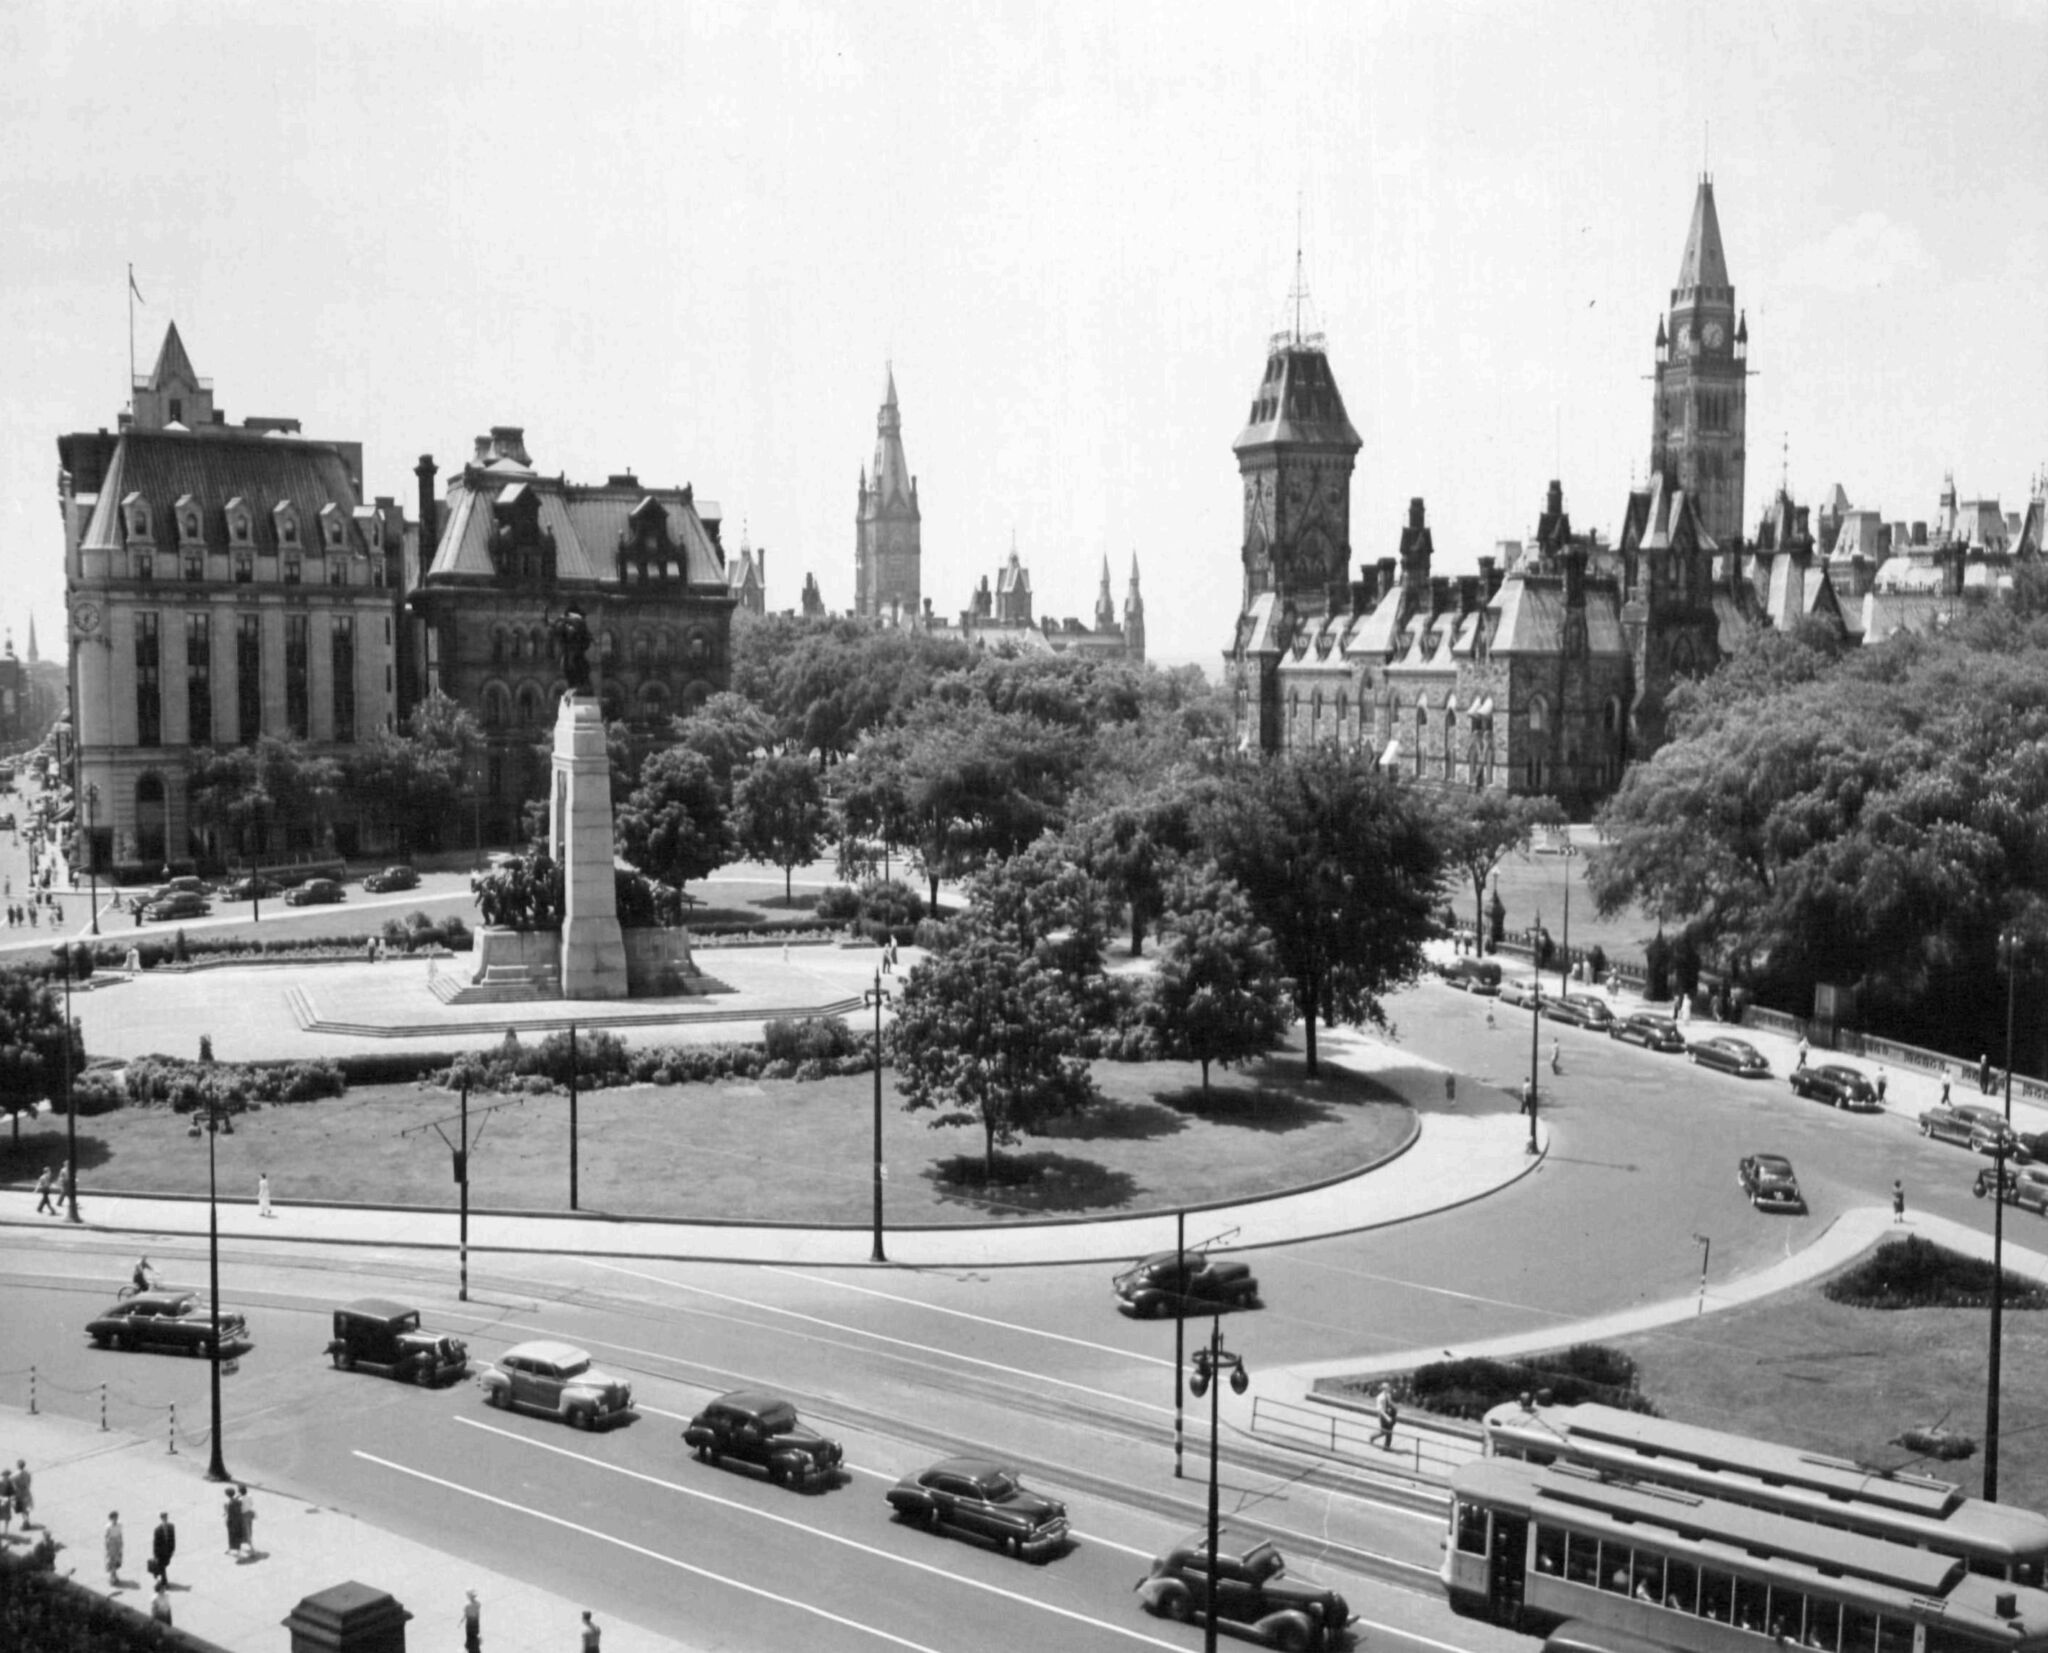 Vue de la place de la Confédération, du Monument commémoratif de guerre, des édifices de la colline du Parlement, du bureau de poste, de l’édifice Langevin, Ottawa, années 1940.